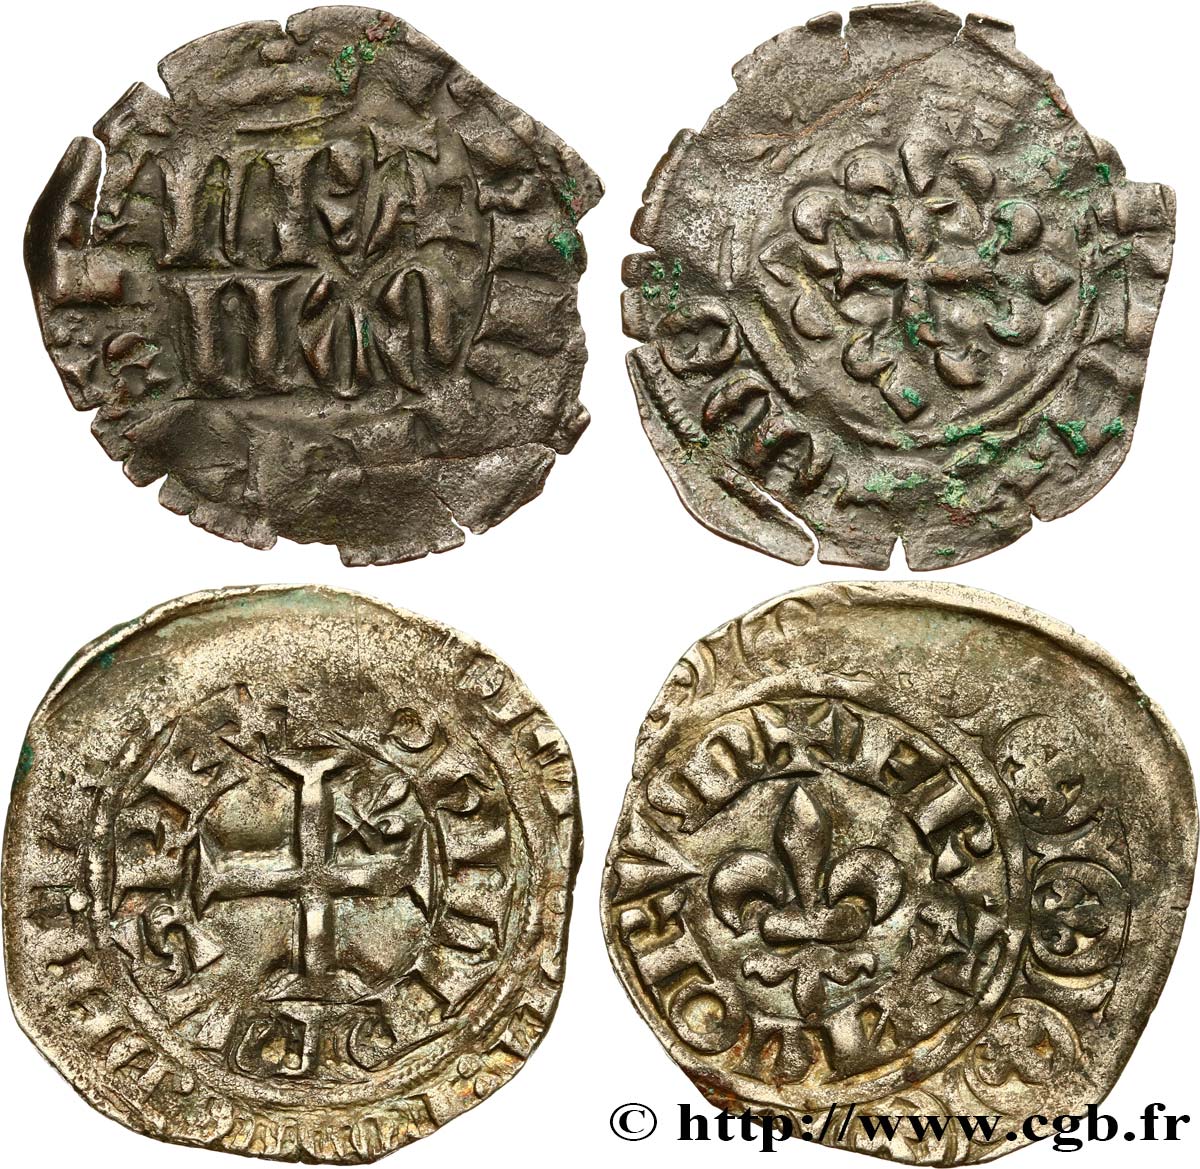 PHILIP VI OF VALOIS Lot de 2 monnaies royales n.d. Ateliers divers VF